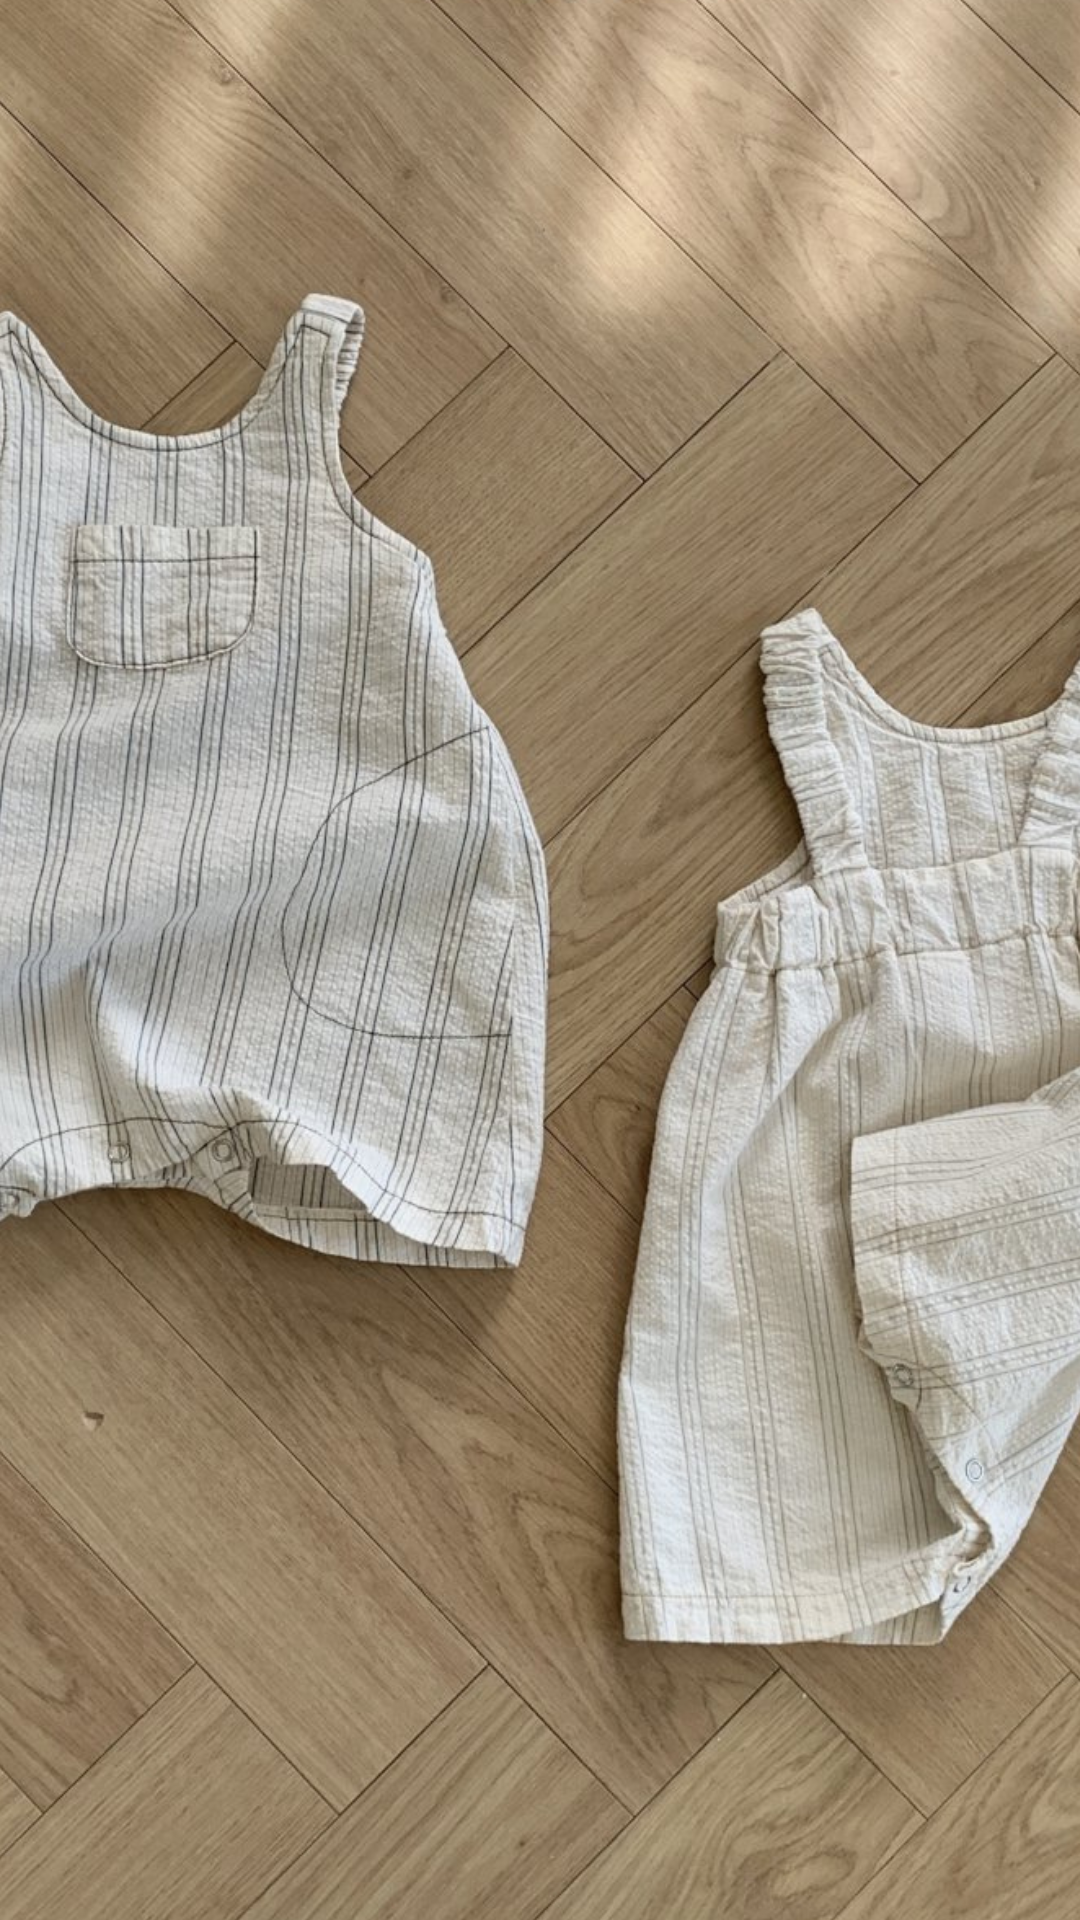 Zwei Baby-Outfits auf einem Holzboden; eines ist ein graues ärmelloses Oberteil mit passenden Shorts, das andere ist ein cremefarbener Bebe Holic Ariel St Body mit geraffter Taille.